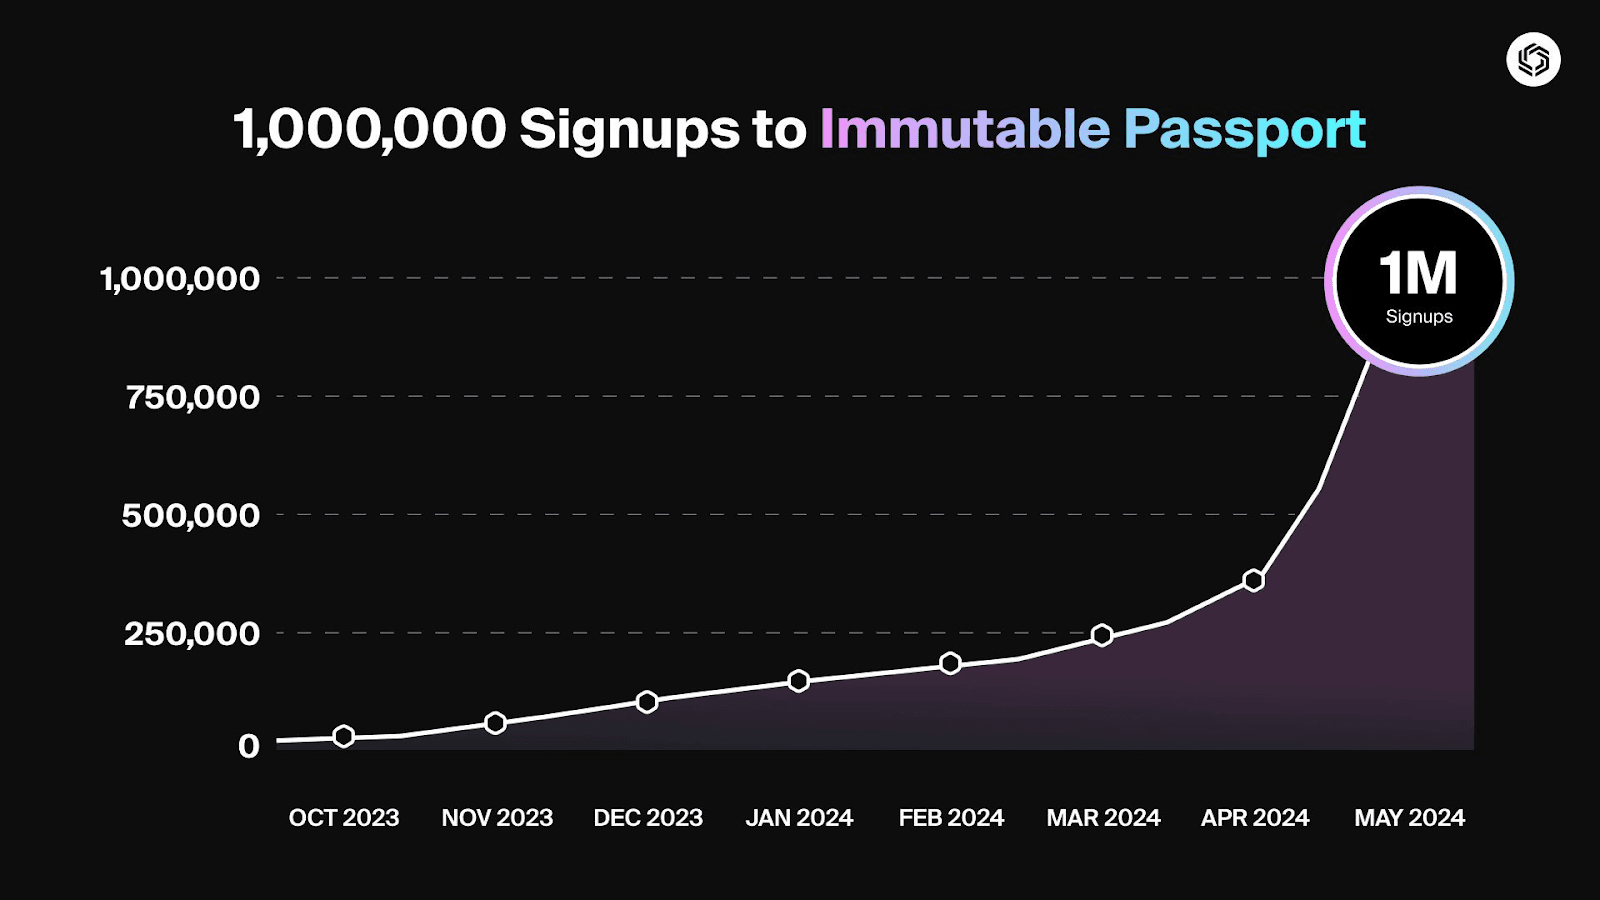 Immutable Major May 2024 Milestones